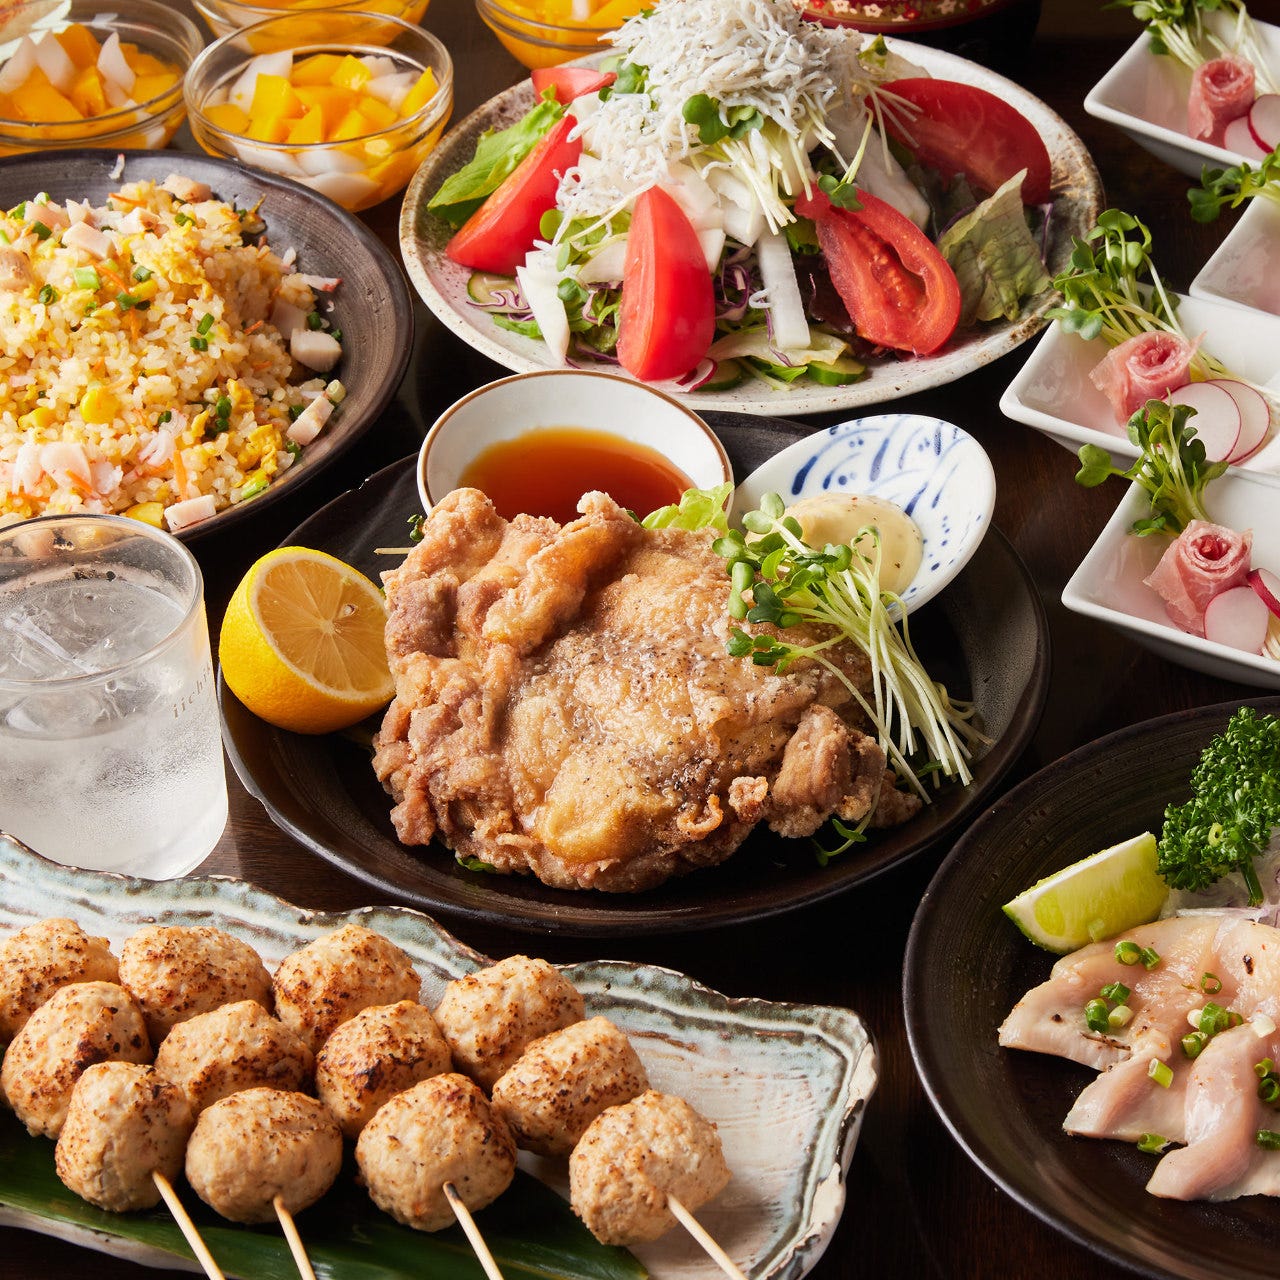 北海鮮魚と比内鶏 東北郷土料理の個室居酒屋 会津商店 武蔵小杉店